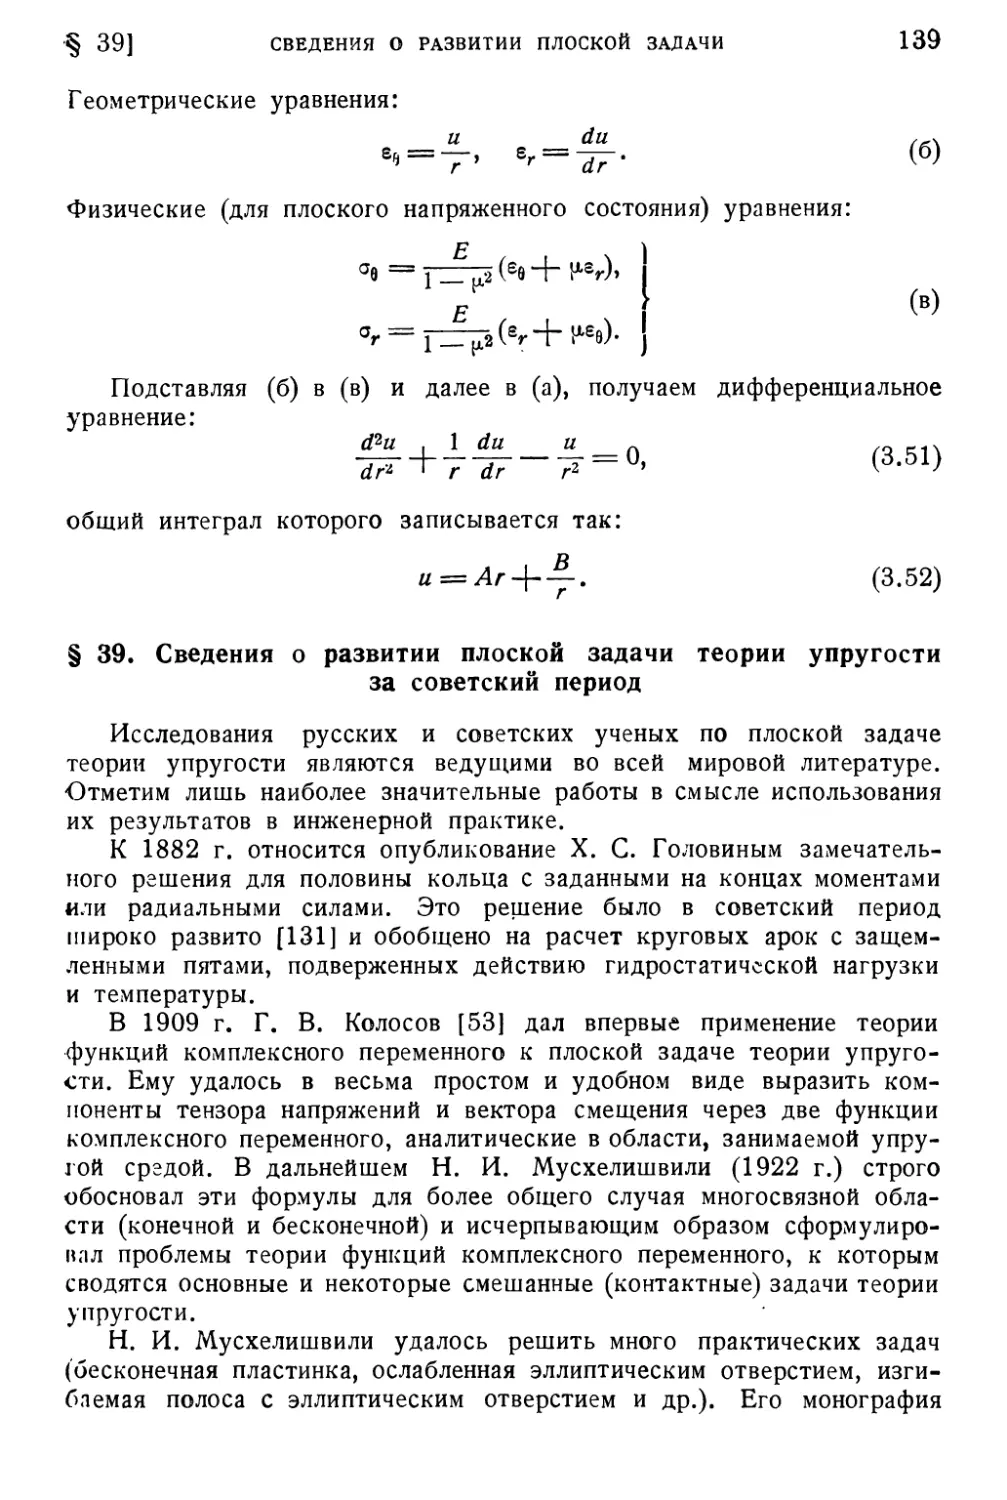 § 39. Сведения о развитии плоской задачи теории упругости за советский период